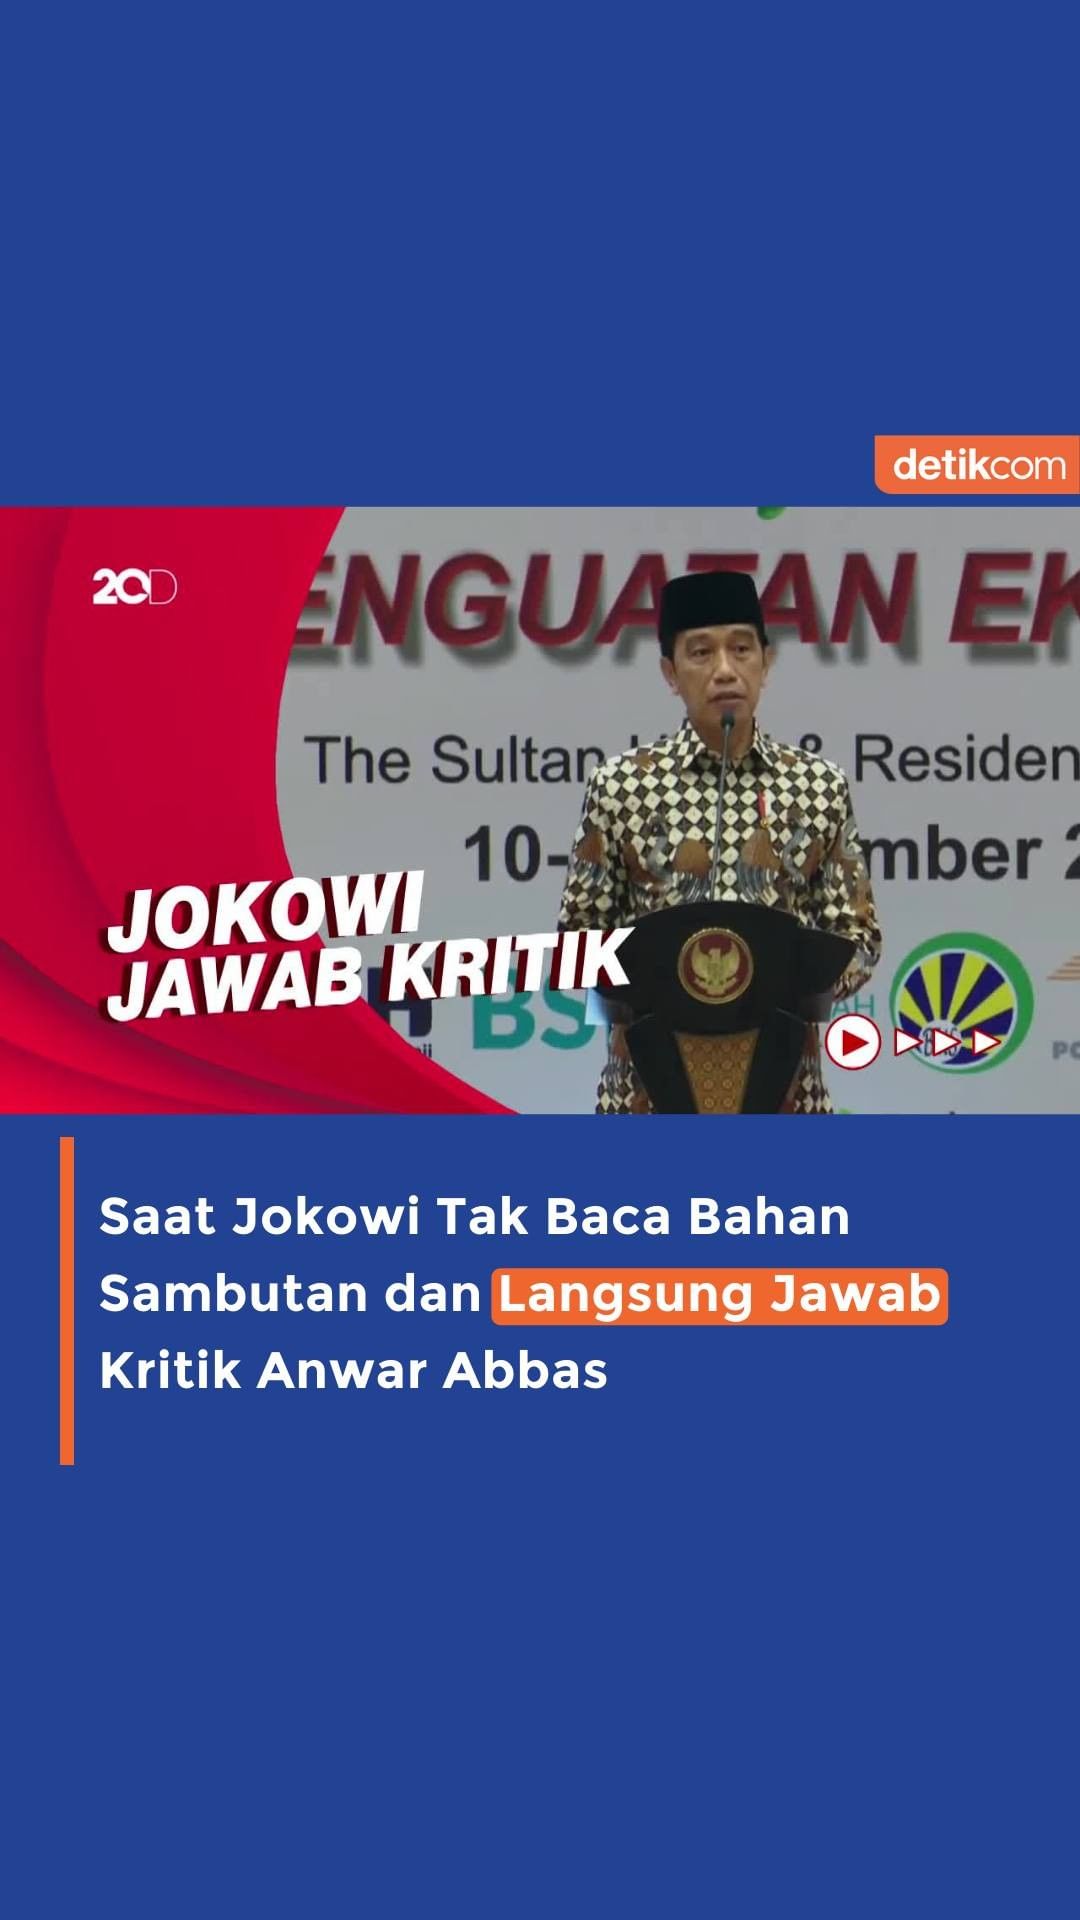 Presiden Joko Widodo memilih langsung menjawab kritik dari Waketum MUI Anwar Abb...